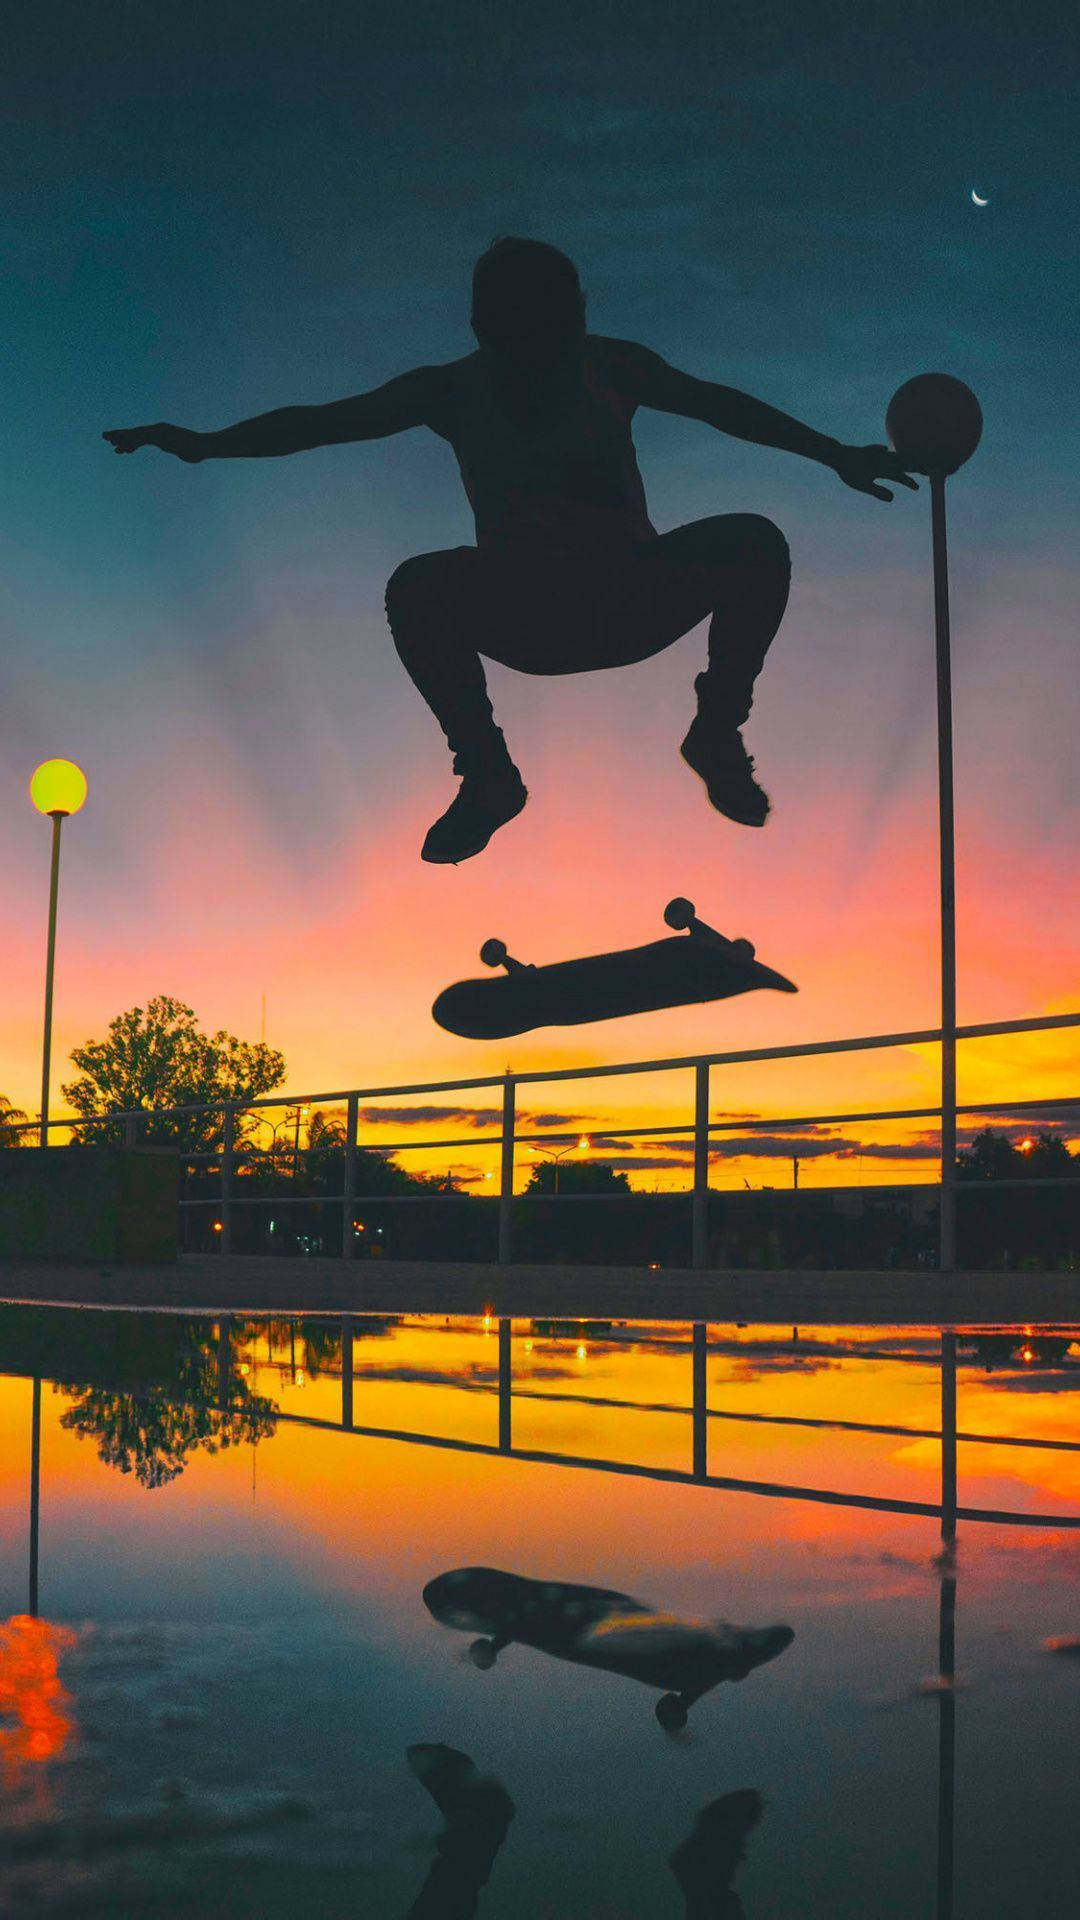 Skater Aesthetic Stunt Silhouette At Sunset Tropical Vibe Wallpaper